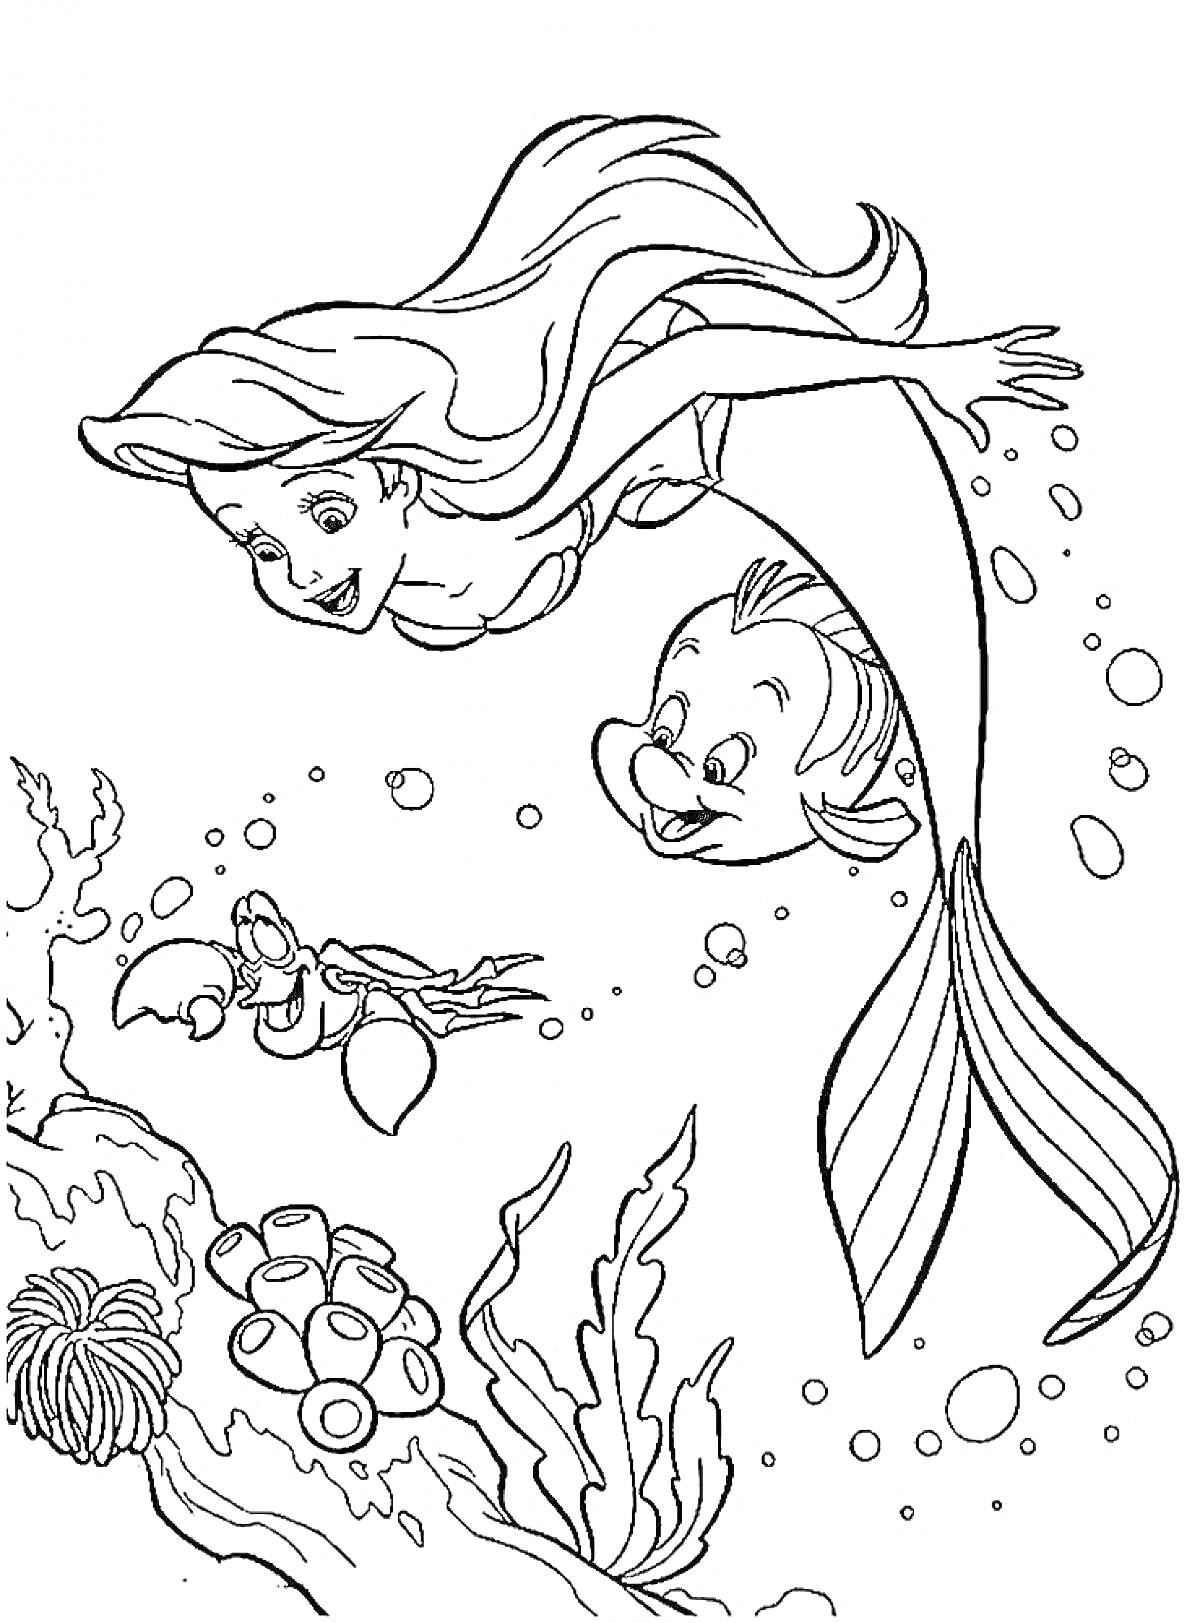 Раскраска Ариэль русалочка с другом плавником, краб под водой, морские растения и кораллы